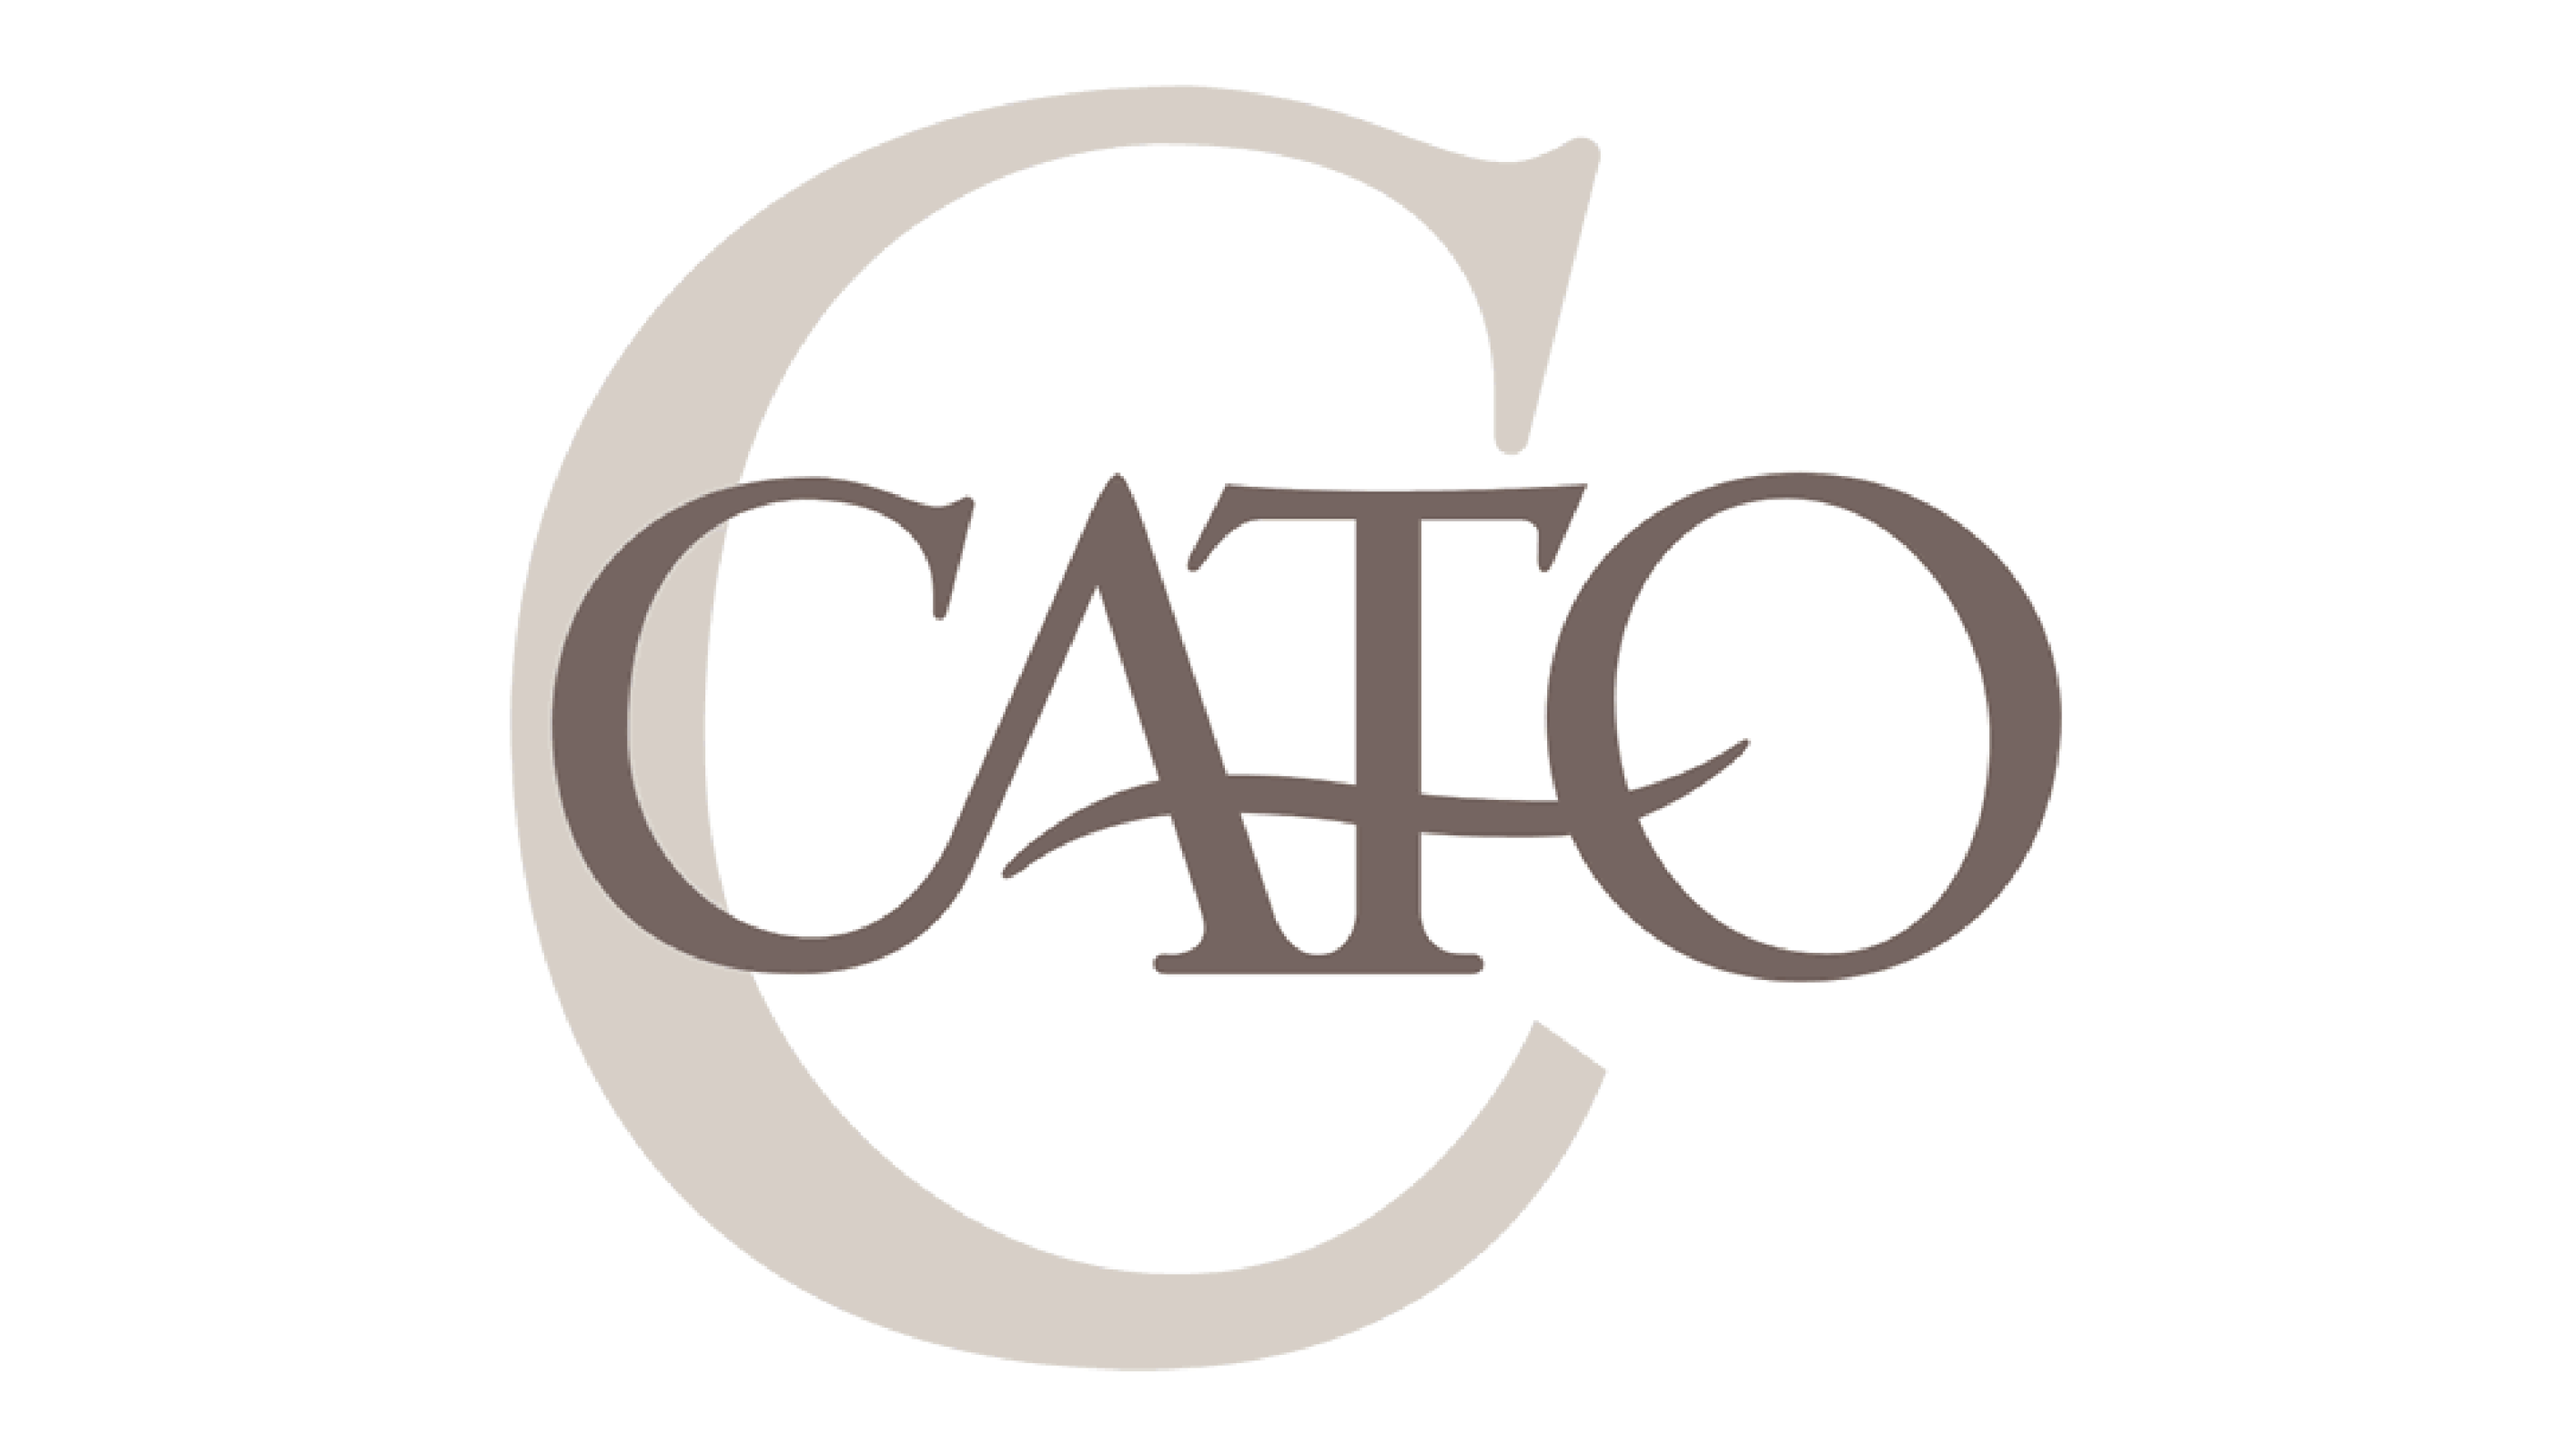 Cato's Logo